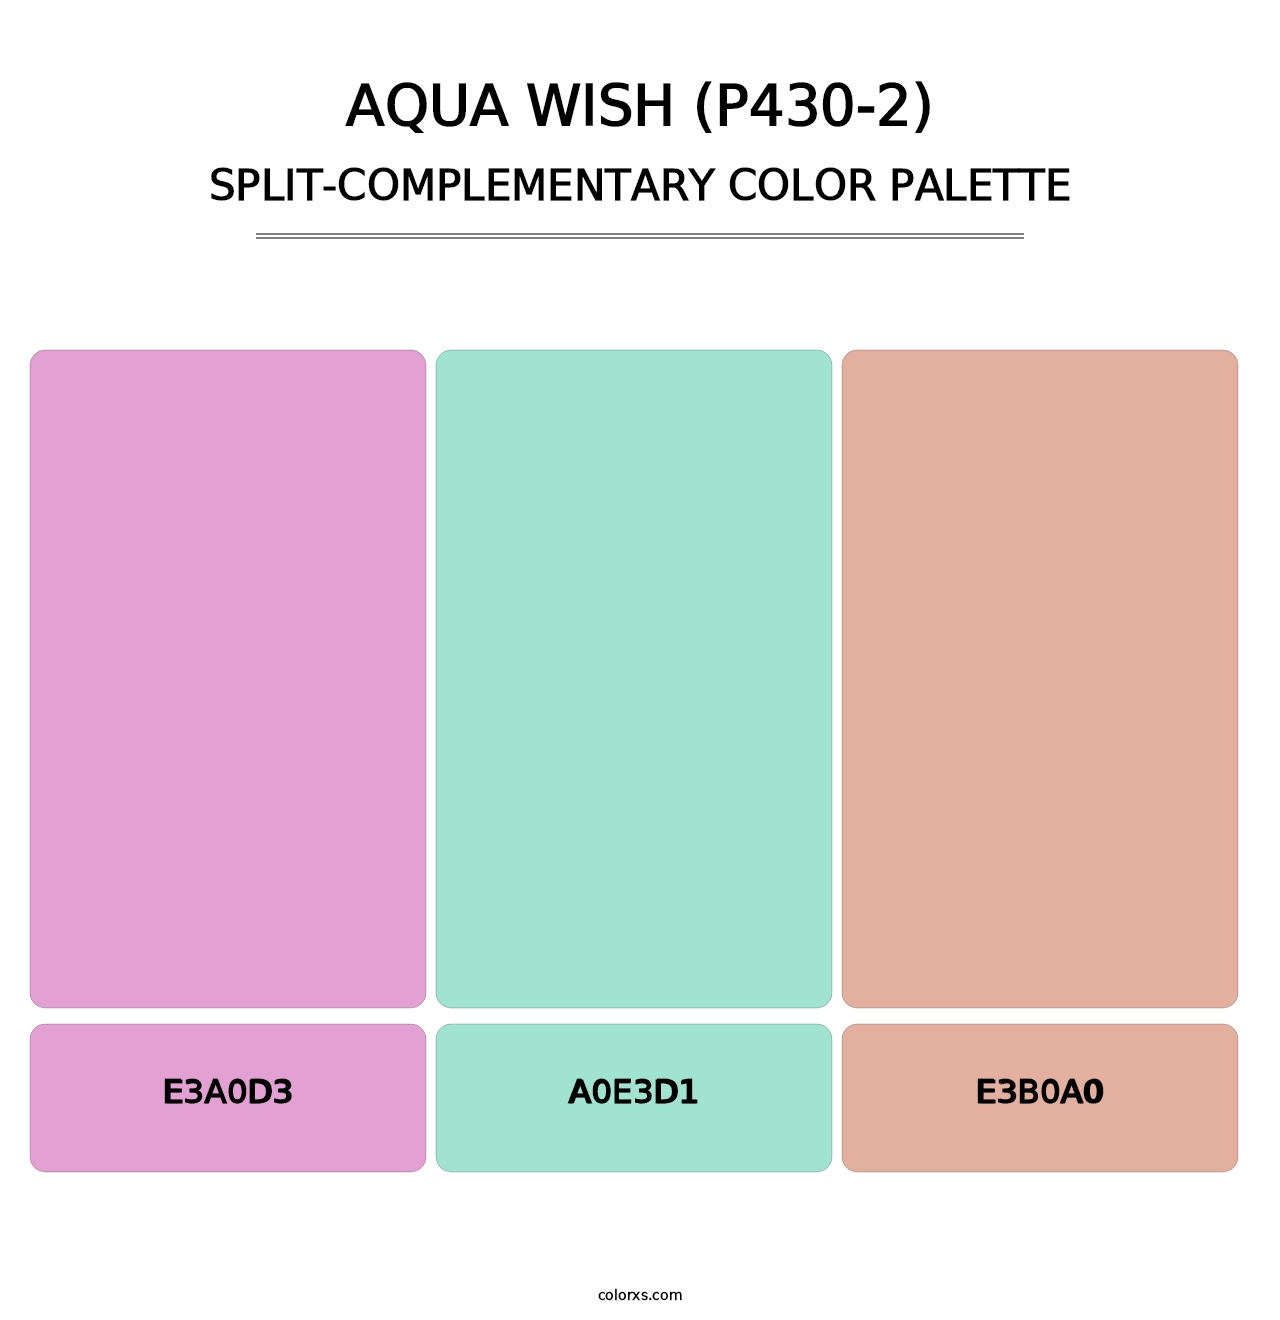 Aqua Wish (P430-2) - Split-Complementary Color Palette